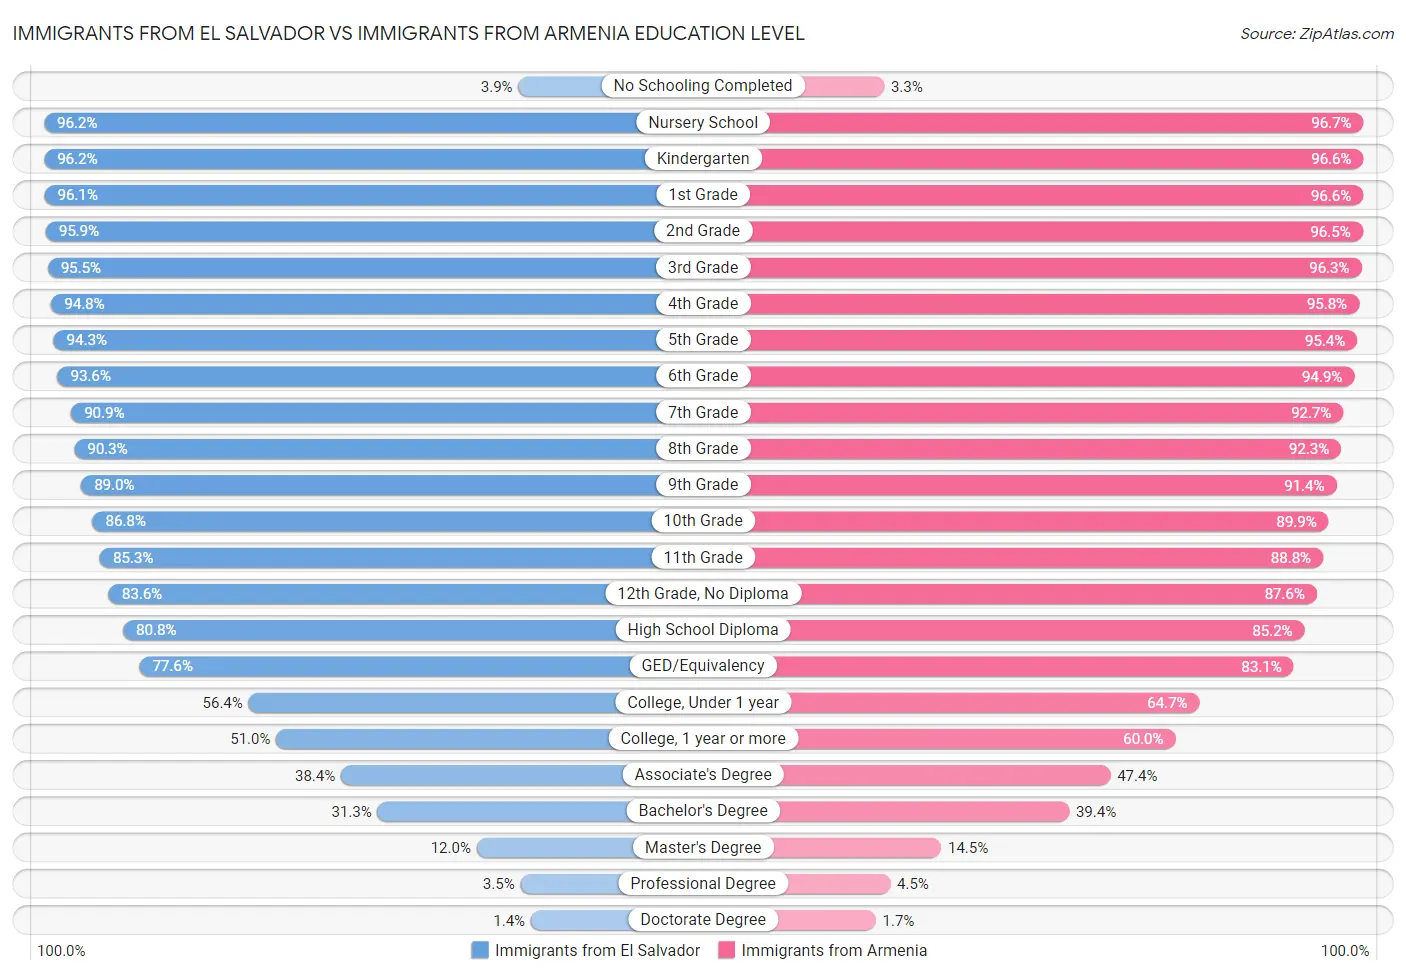 Immigrants from El Salvador vs Immigrants from Armenia Education Level